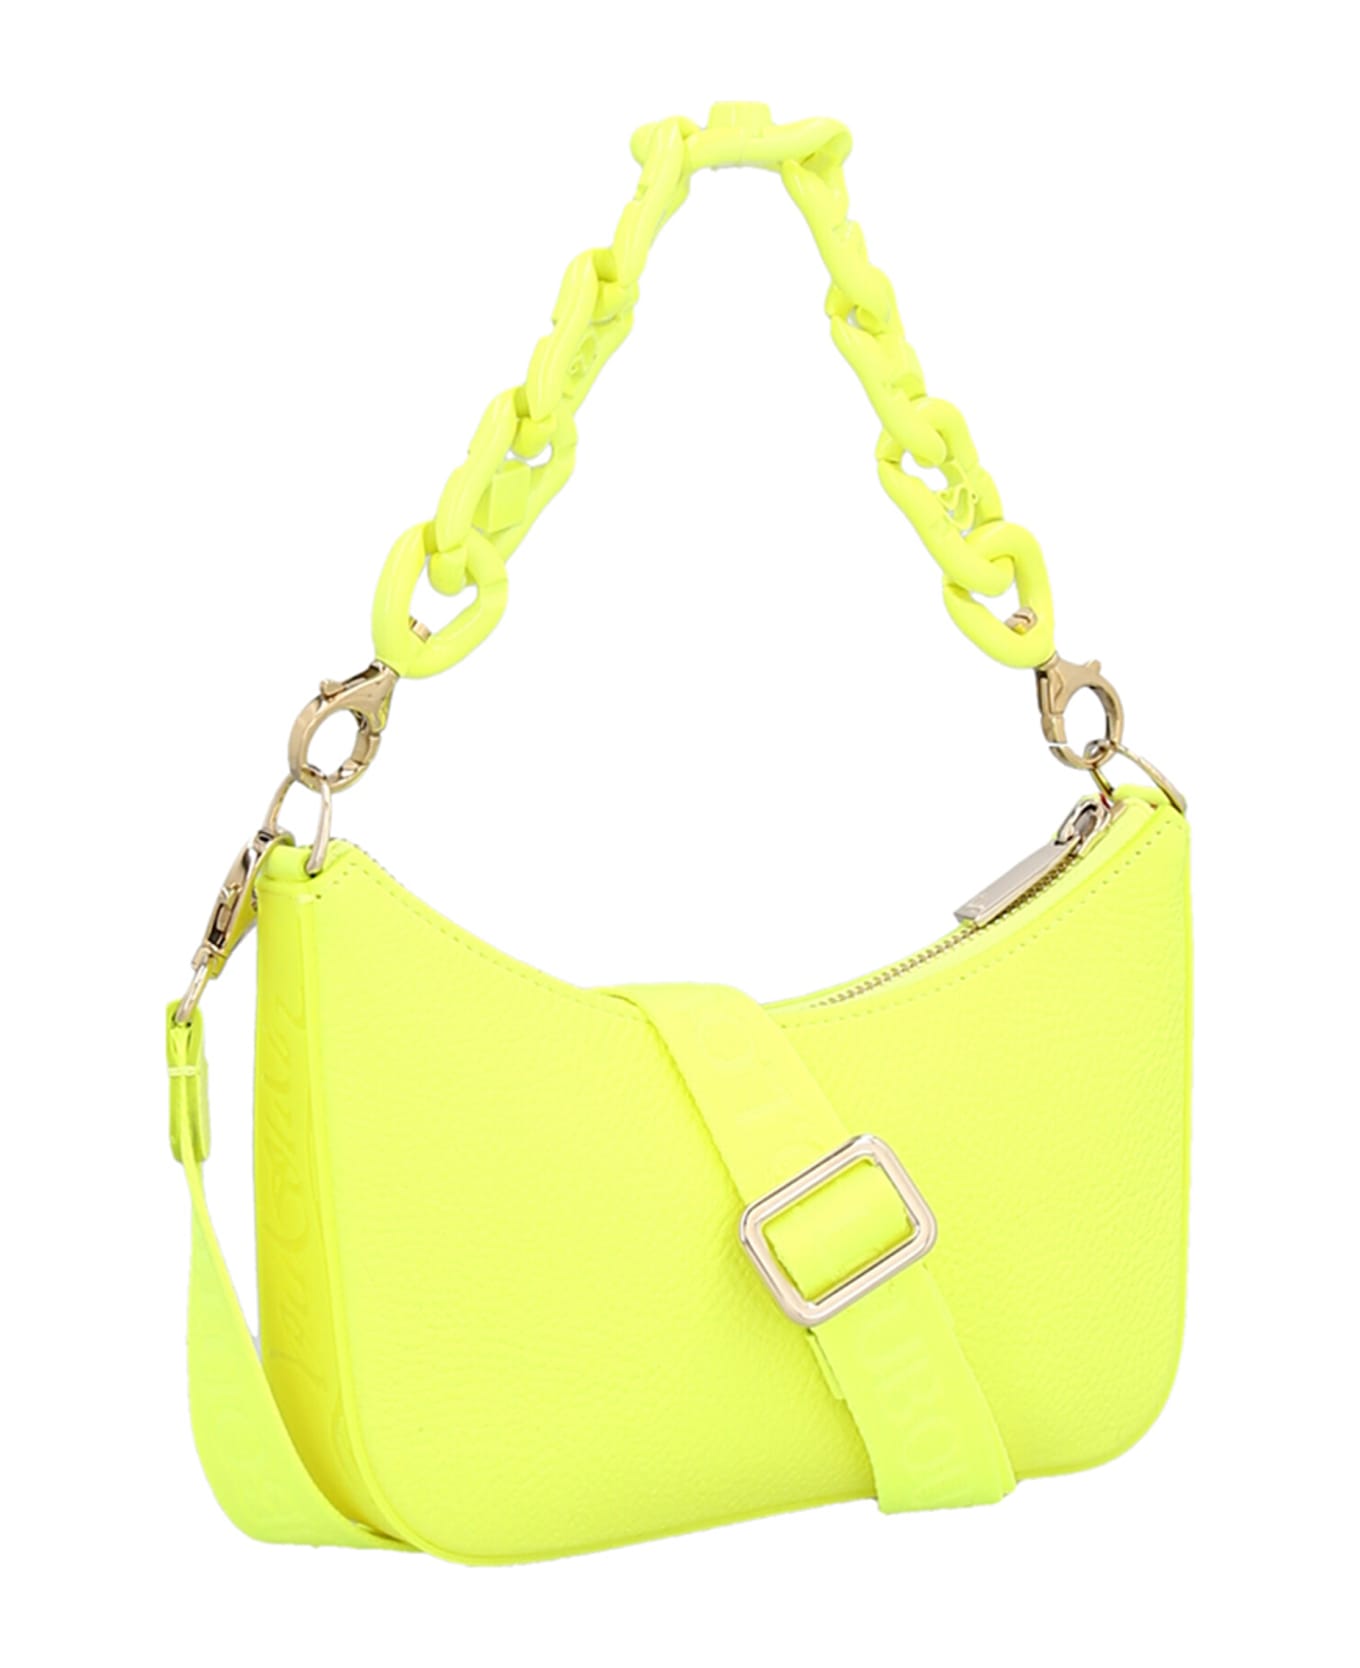 Christian Louboutin 'loubila Chain Mini' Shoulder Bag - Yellow